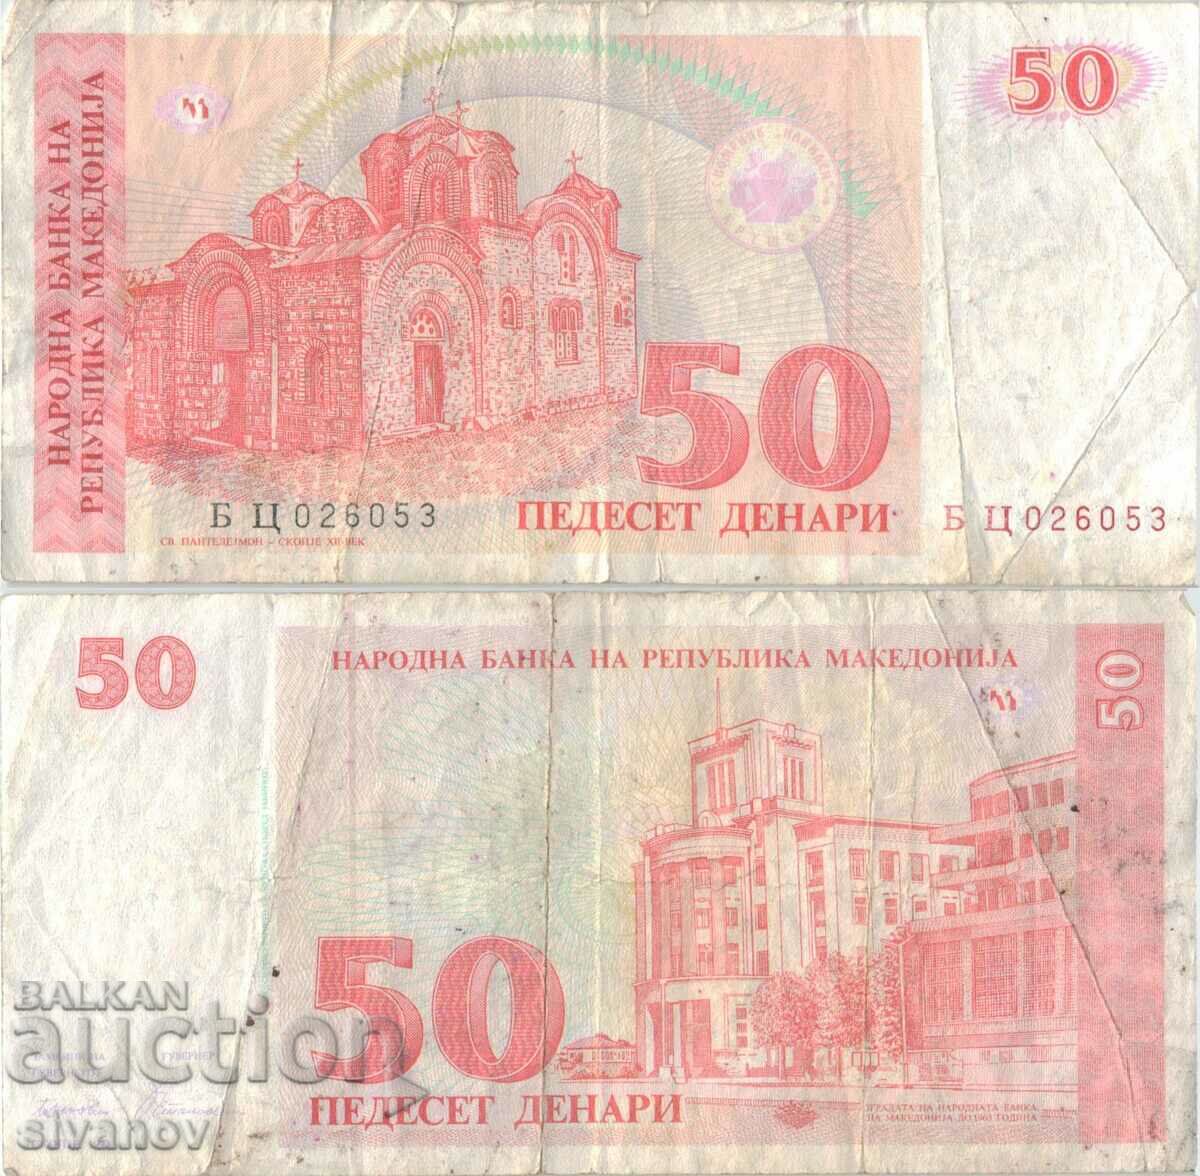 Macedonia 50 denars 1993 banknote #5218